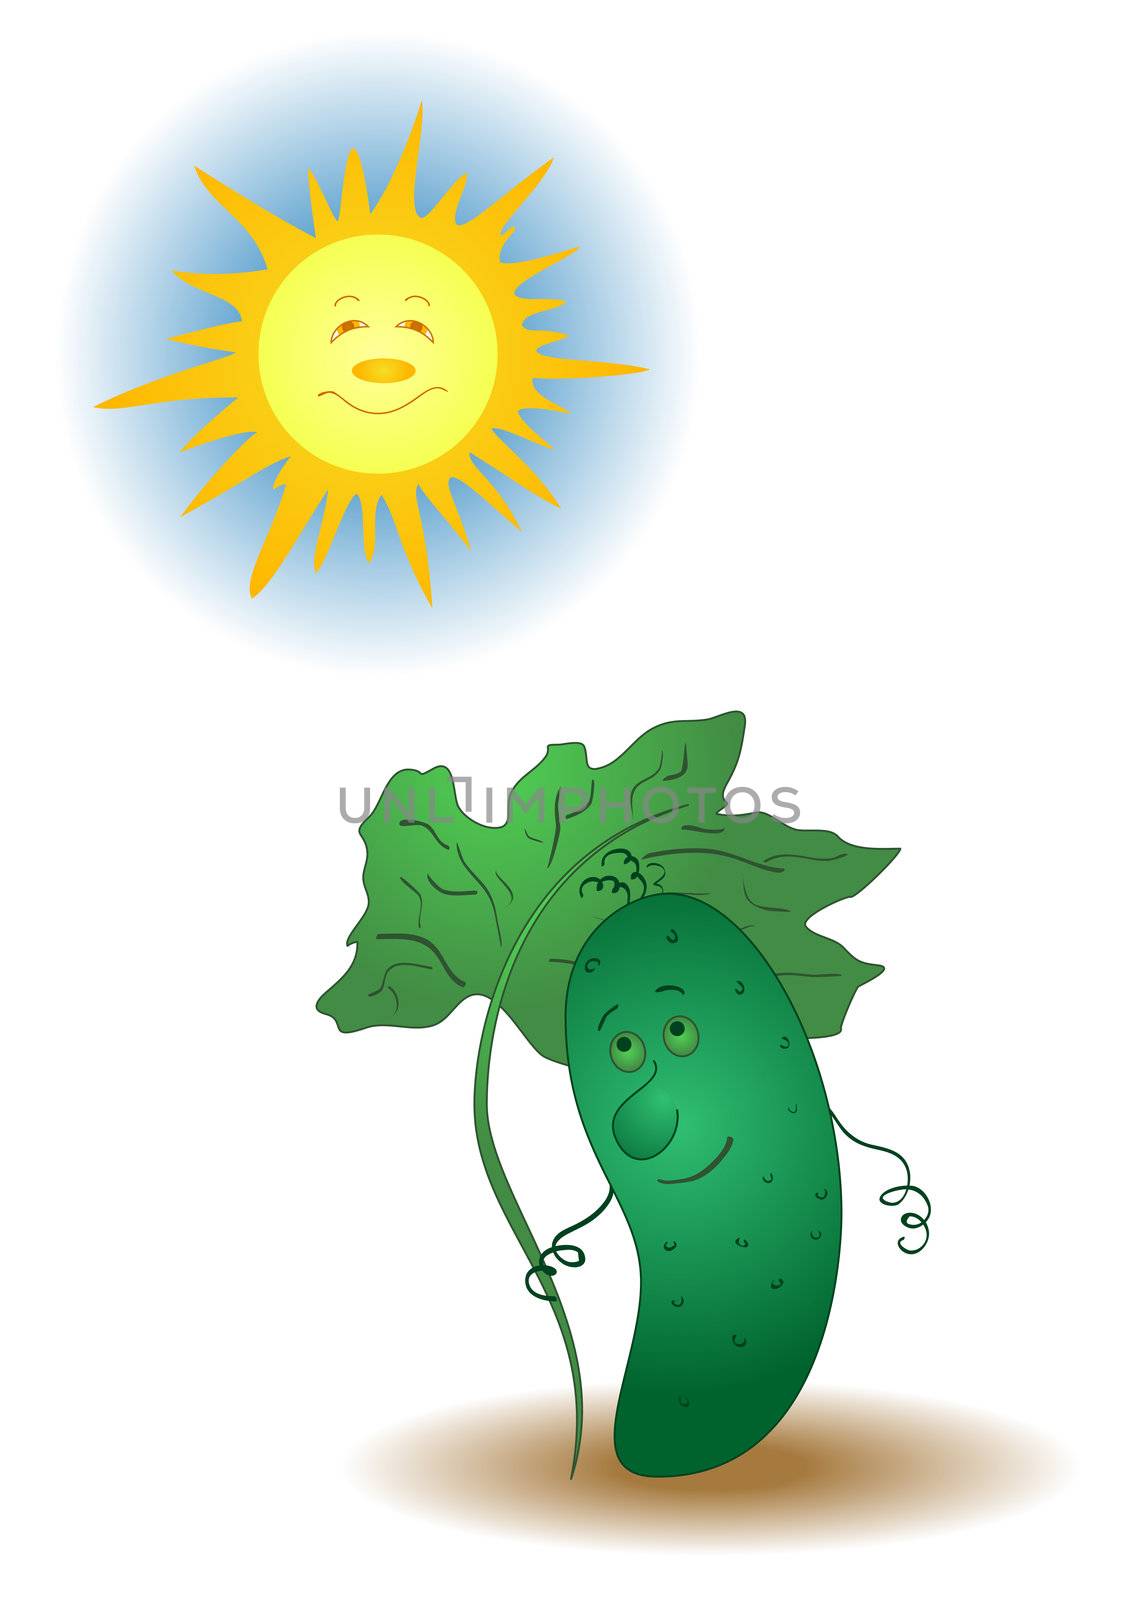 Summer cartoon, cucumber hiding under an umbrella from the sun